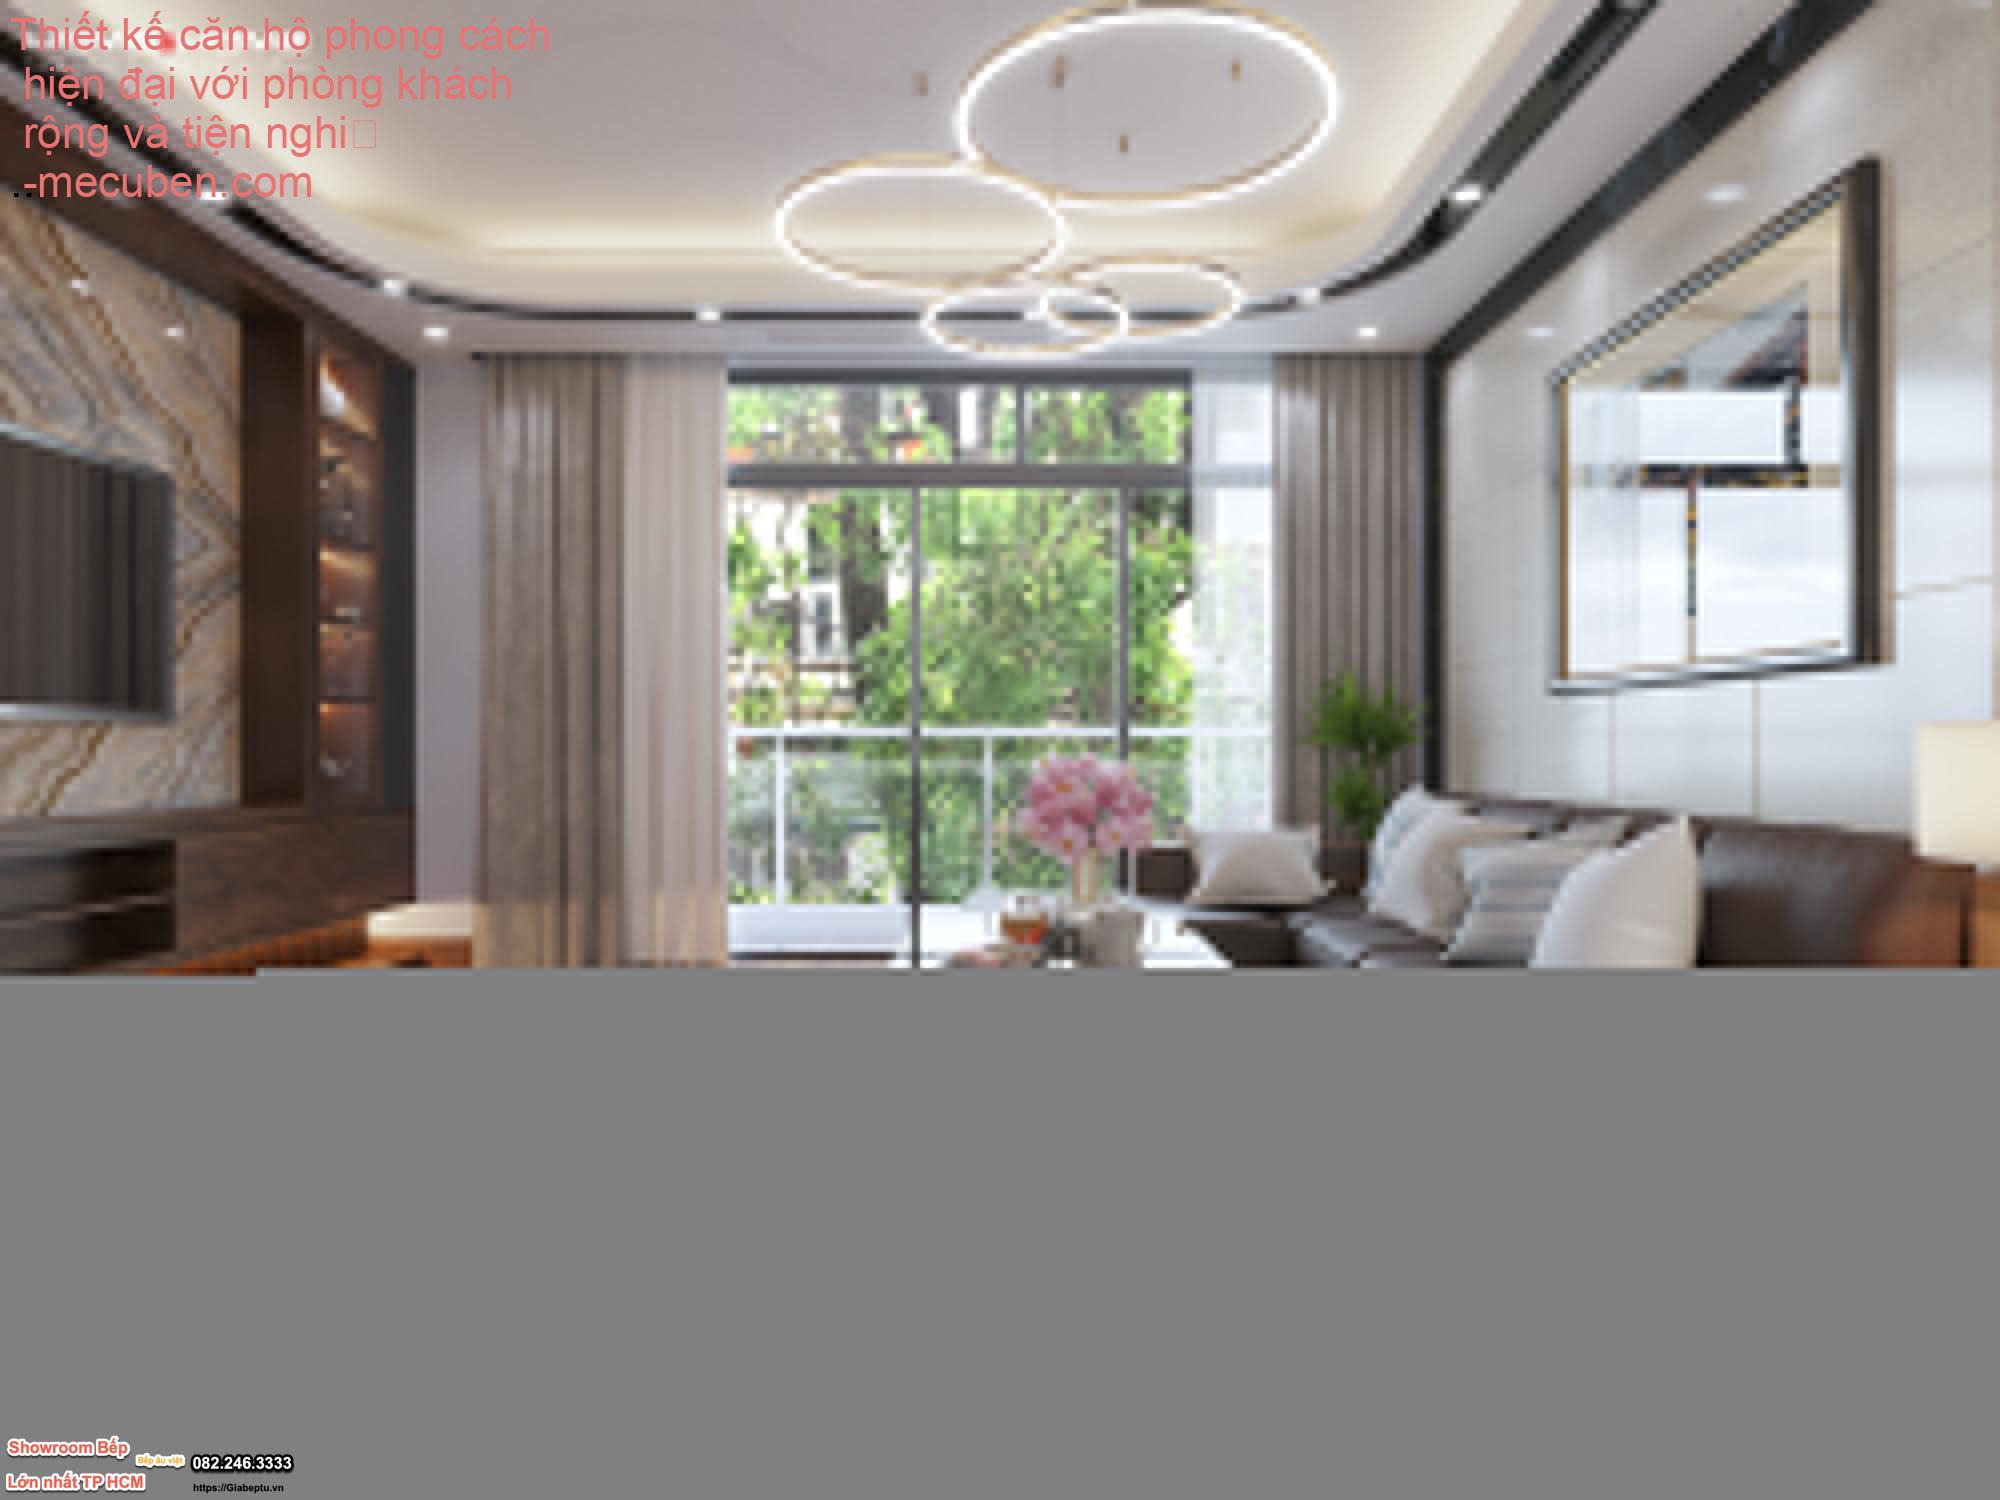 Thiết kế căn hộ phong cách hiện đại với phòng khách rộng và tiện nghi
